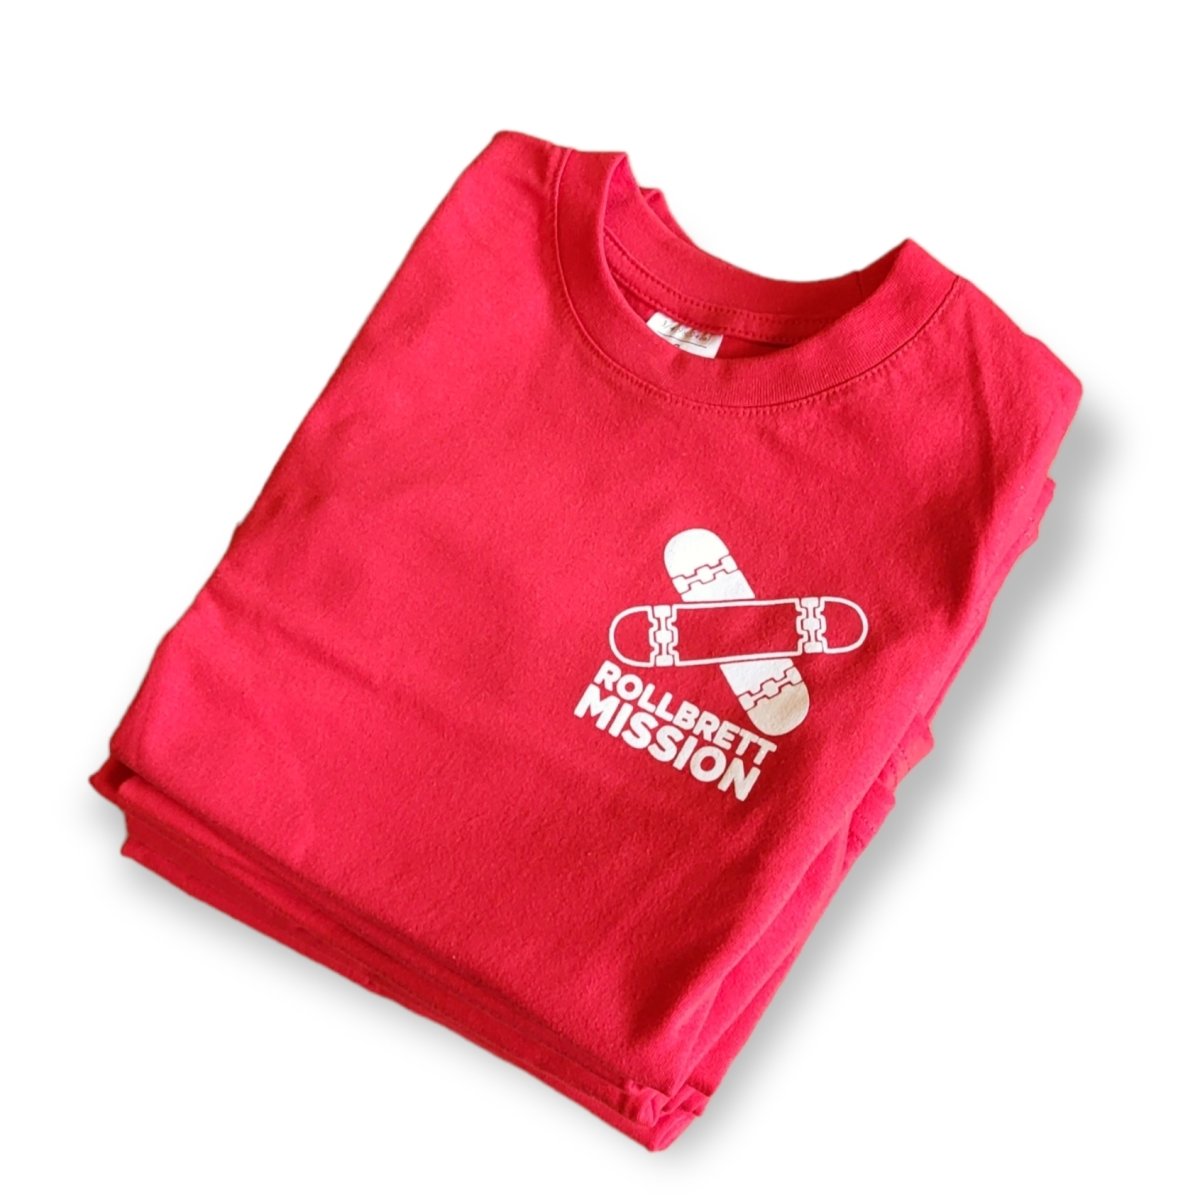 Rollbrett Mission Kids T-Shirt Mini Logo rot - Shirts & Tops - Rollbrett Mission